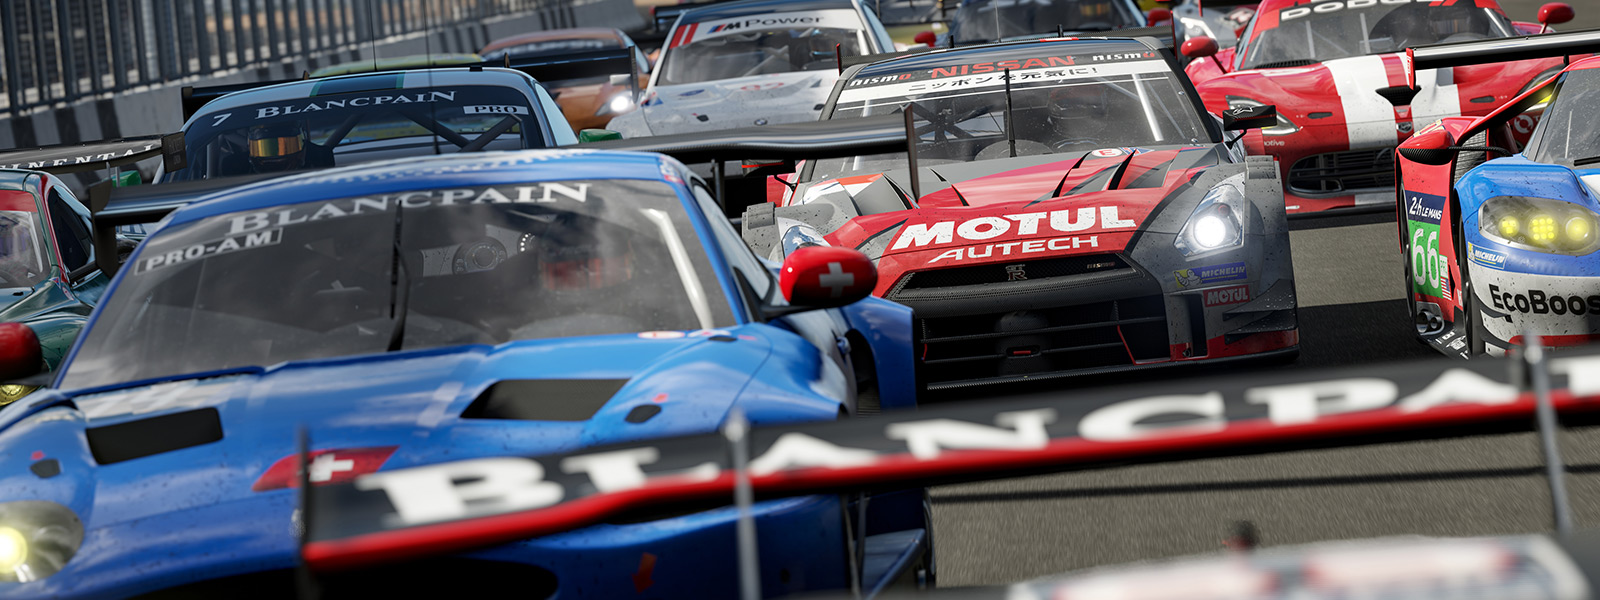 Vista frontal de la línea de partida de una carrera del juego Forza Motorsport 7